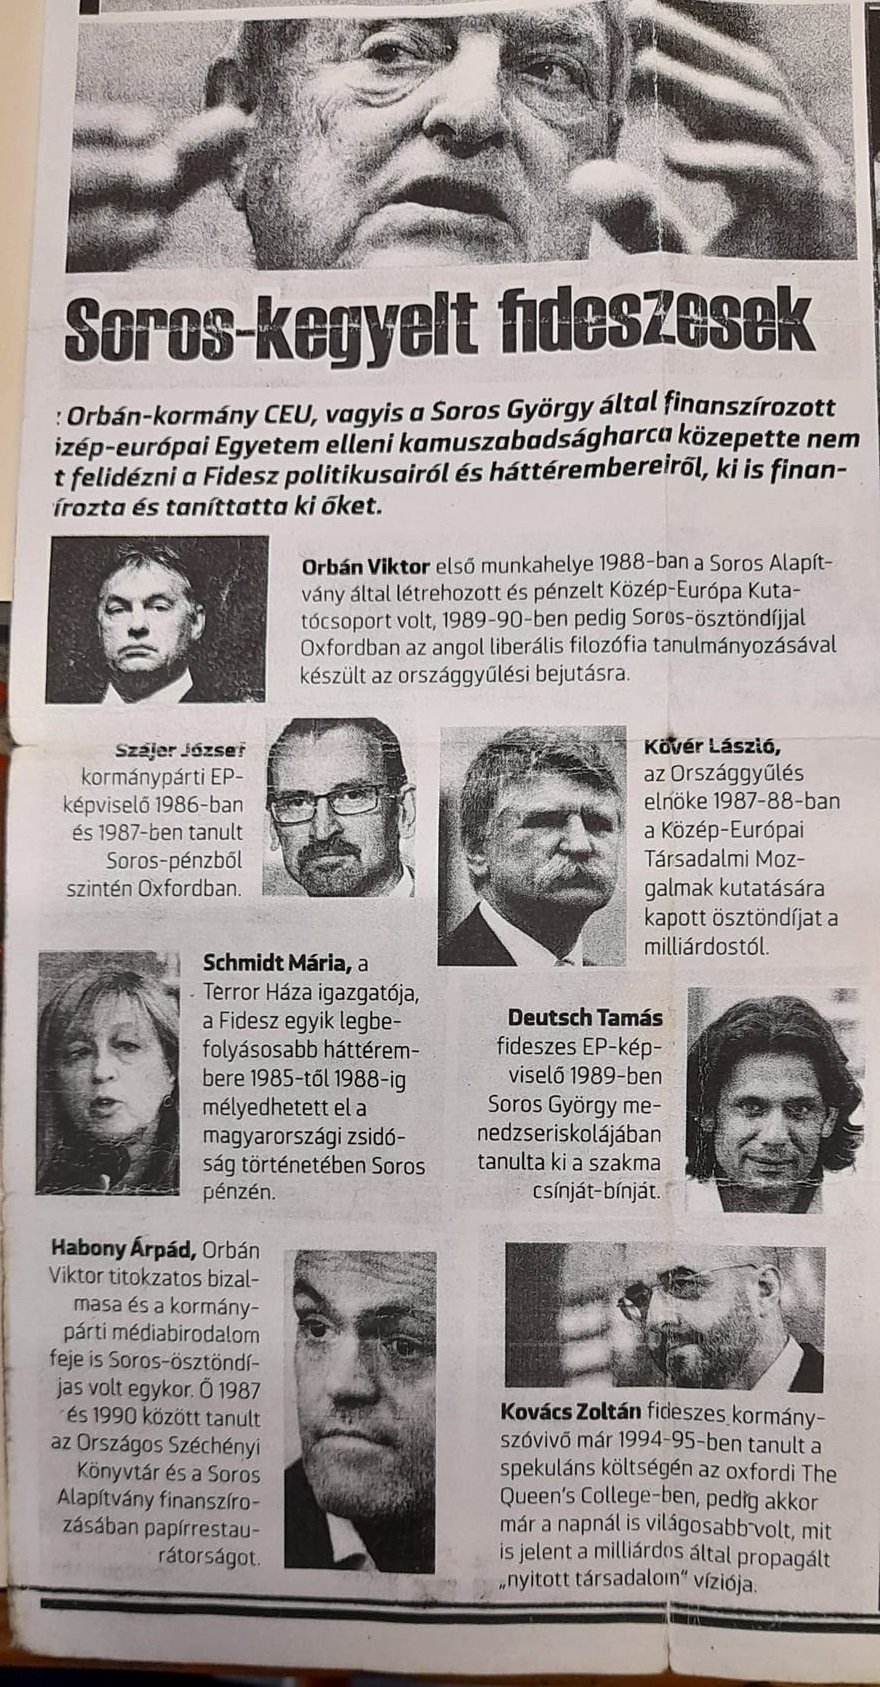 Fidesz benådad av Soros